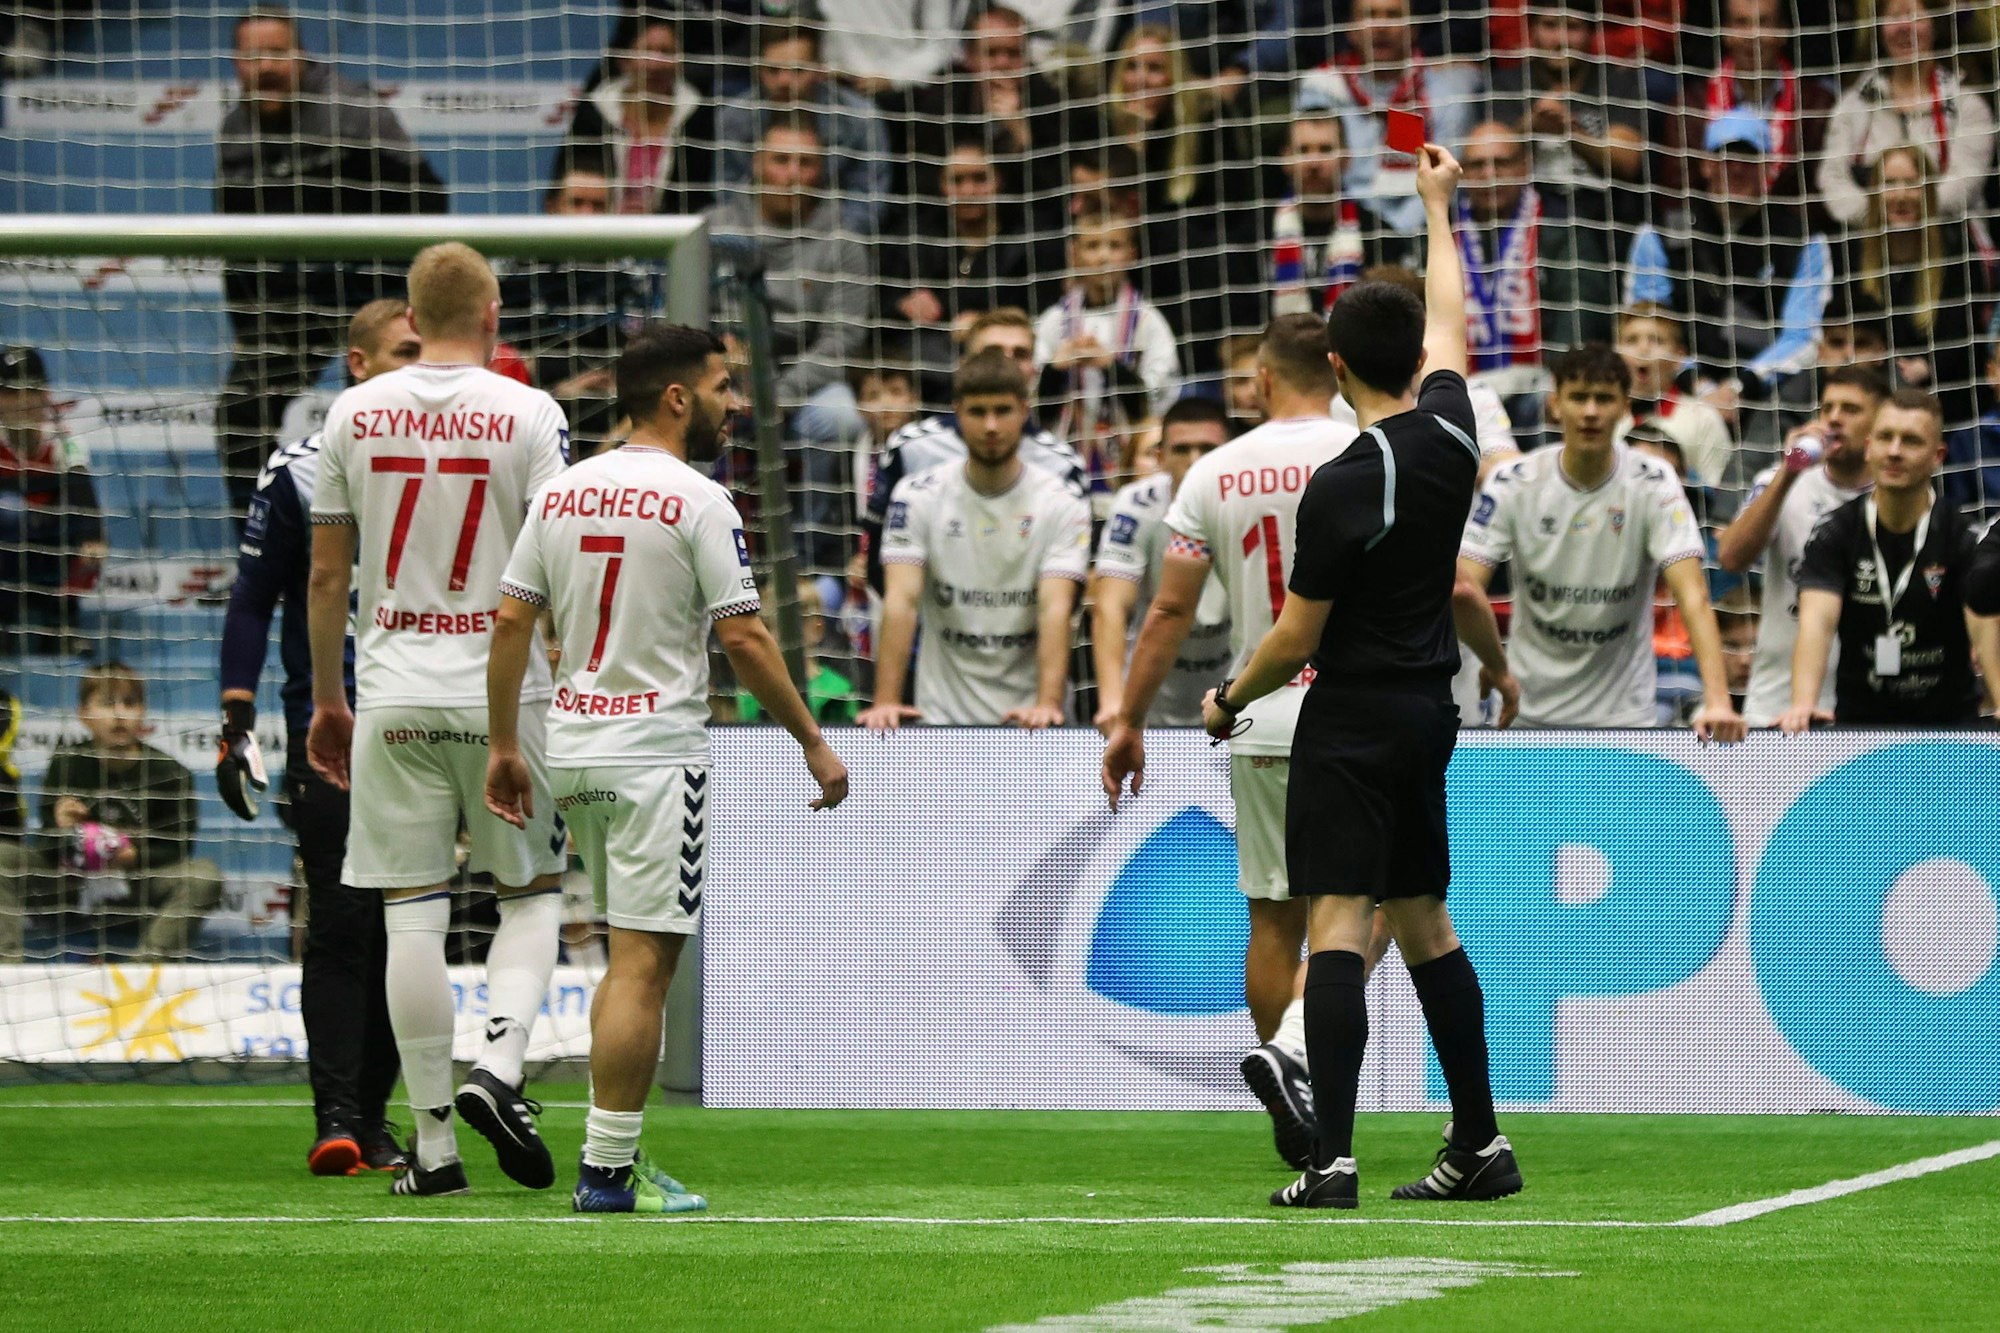 Lukas Podolski geht von einem Fußballfeld, ein Schiedsrichter zeigt ihm die Rote Karte.